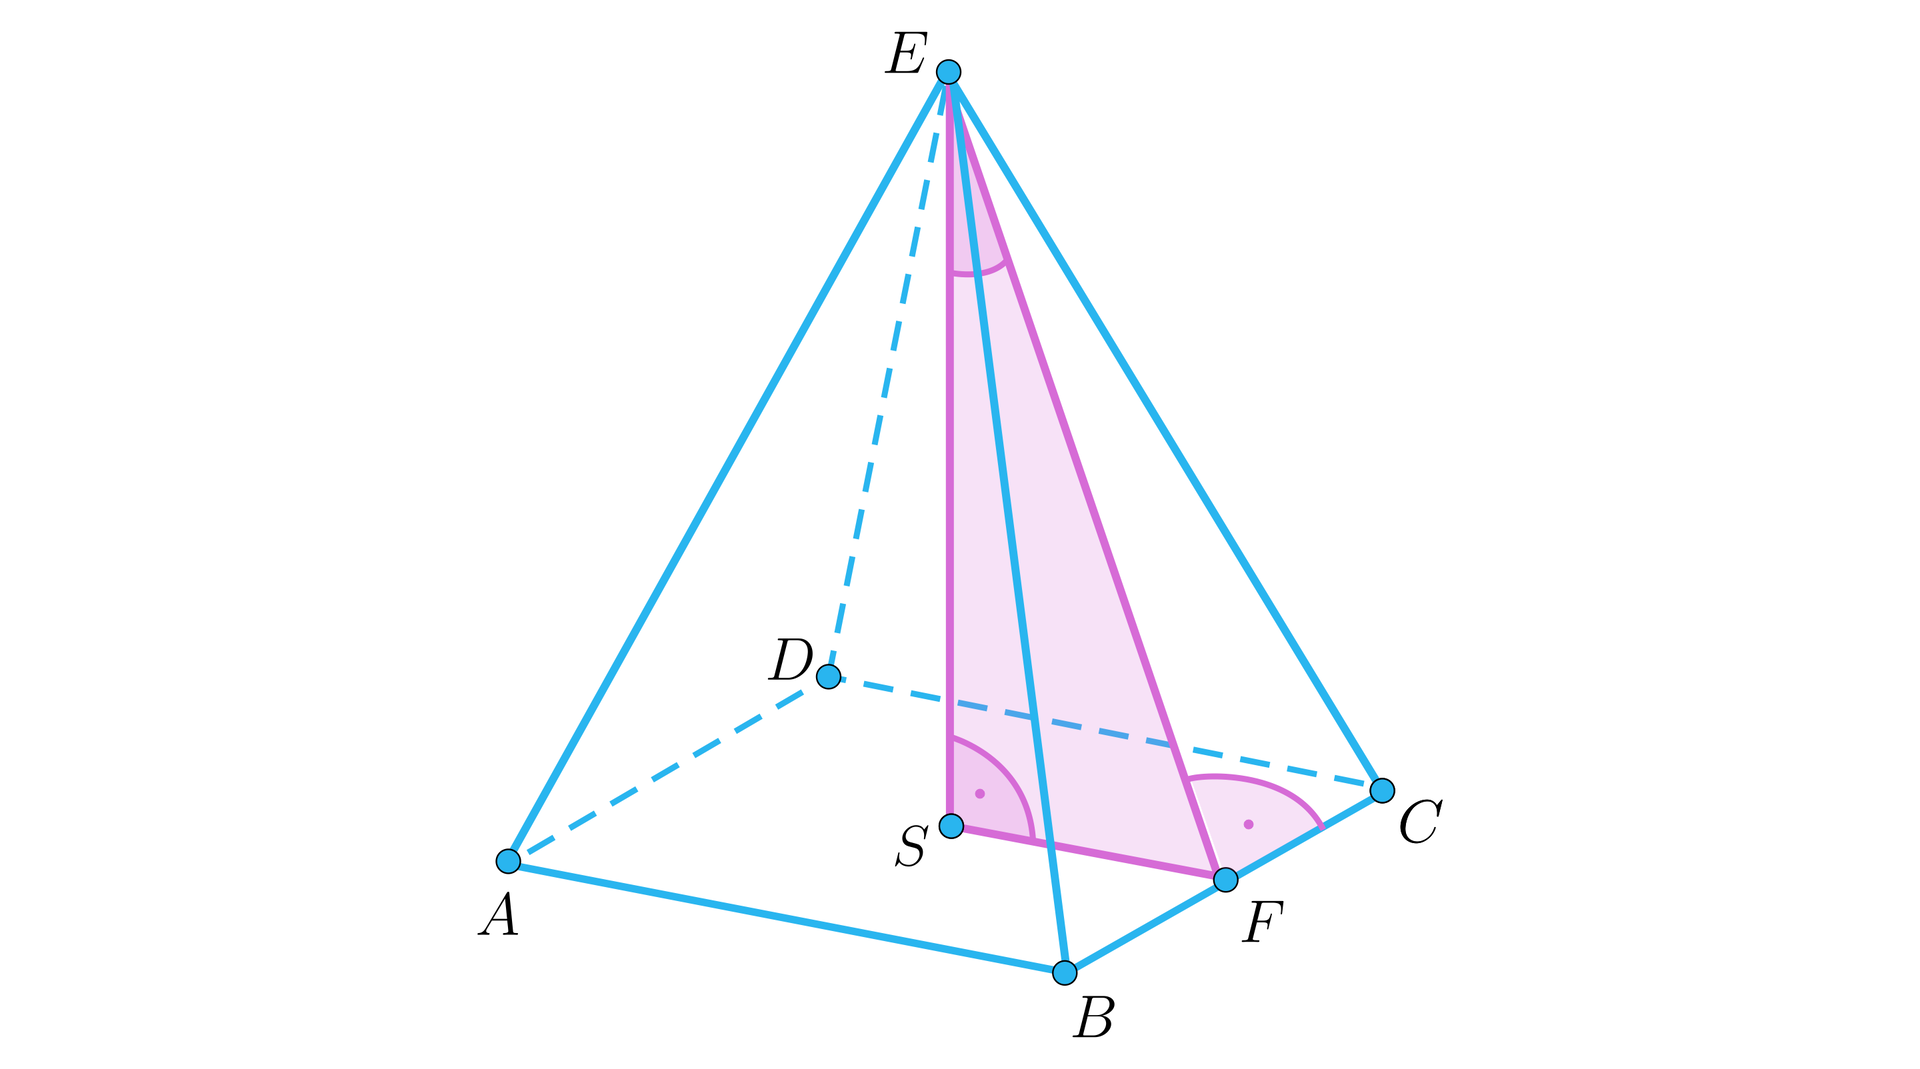 Rysunek przedstawia ostrosłup prawidłowy czworokątny o podstawie A B C D i wierzchołku E. Z wierzchołka upuszczona jest wysokość E S, przy punkcie S zaznaczony jest kąt prosty i od tego punktu poprowadzony jest odcinek S F, przy czym punkt F znajduje się na krawędzi B C. Na rysunku oznaczony  jest również odcinek E F i kąt prosty E F C. Kolorem różowym zaznaczony jest trójkąt S F E.